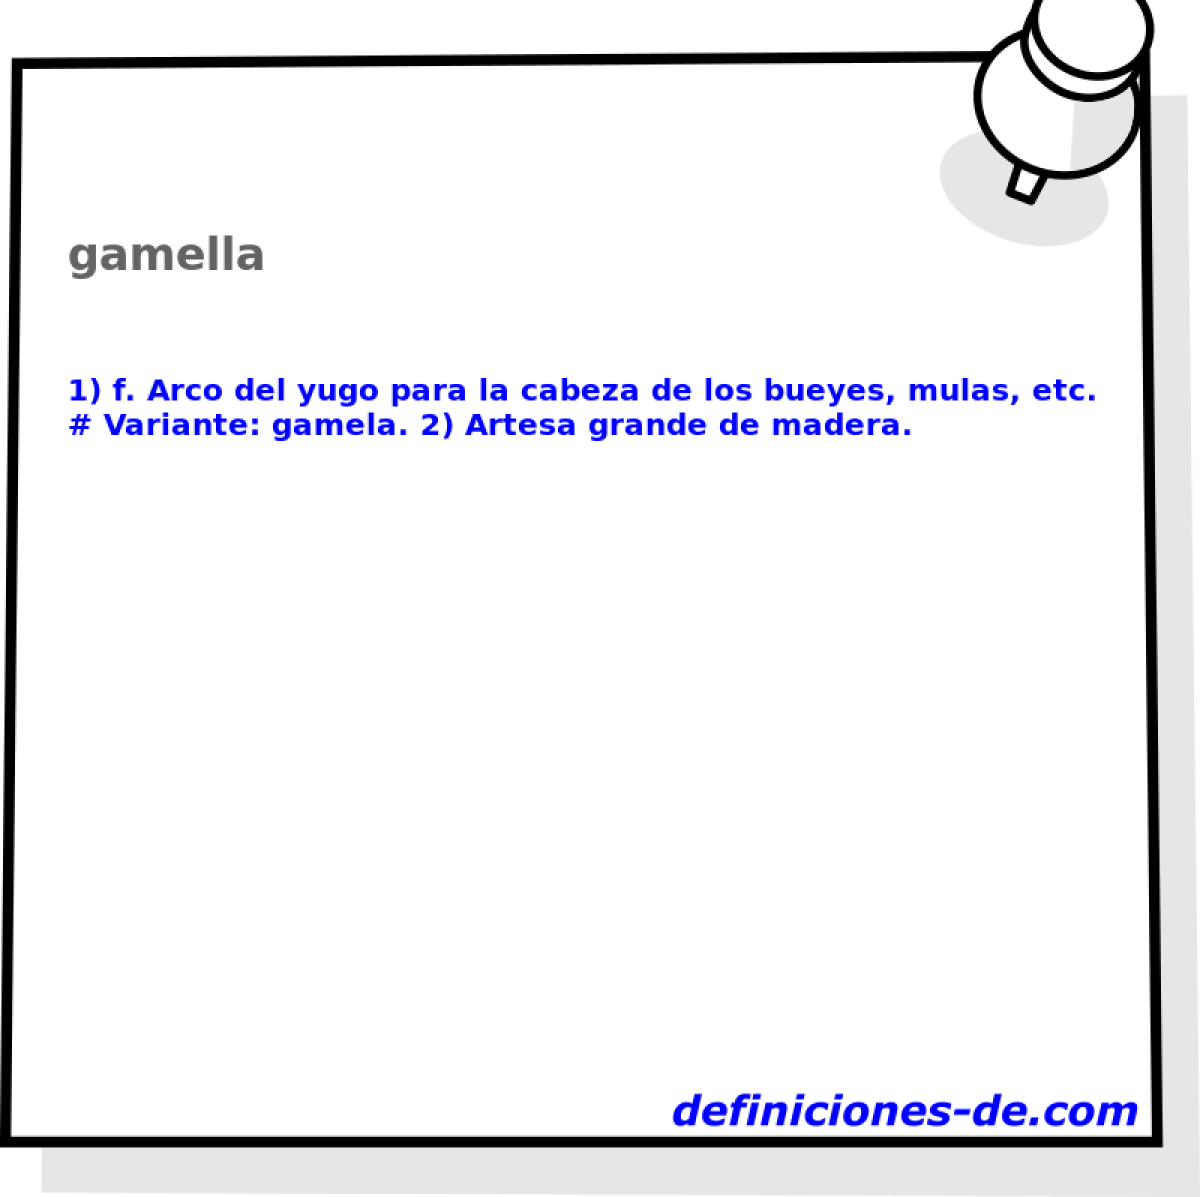 gamella 